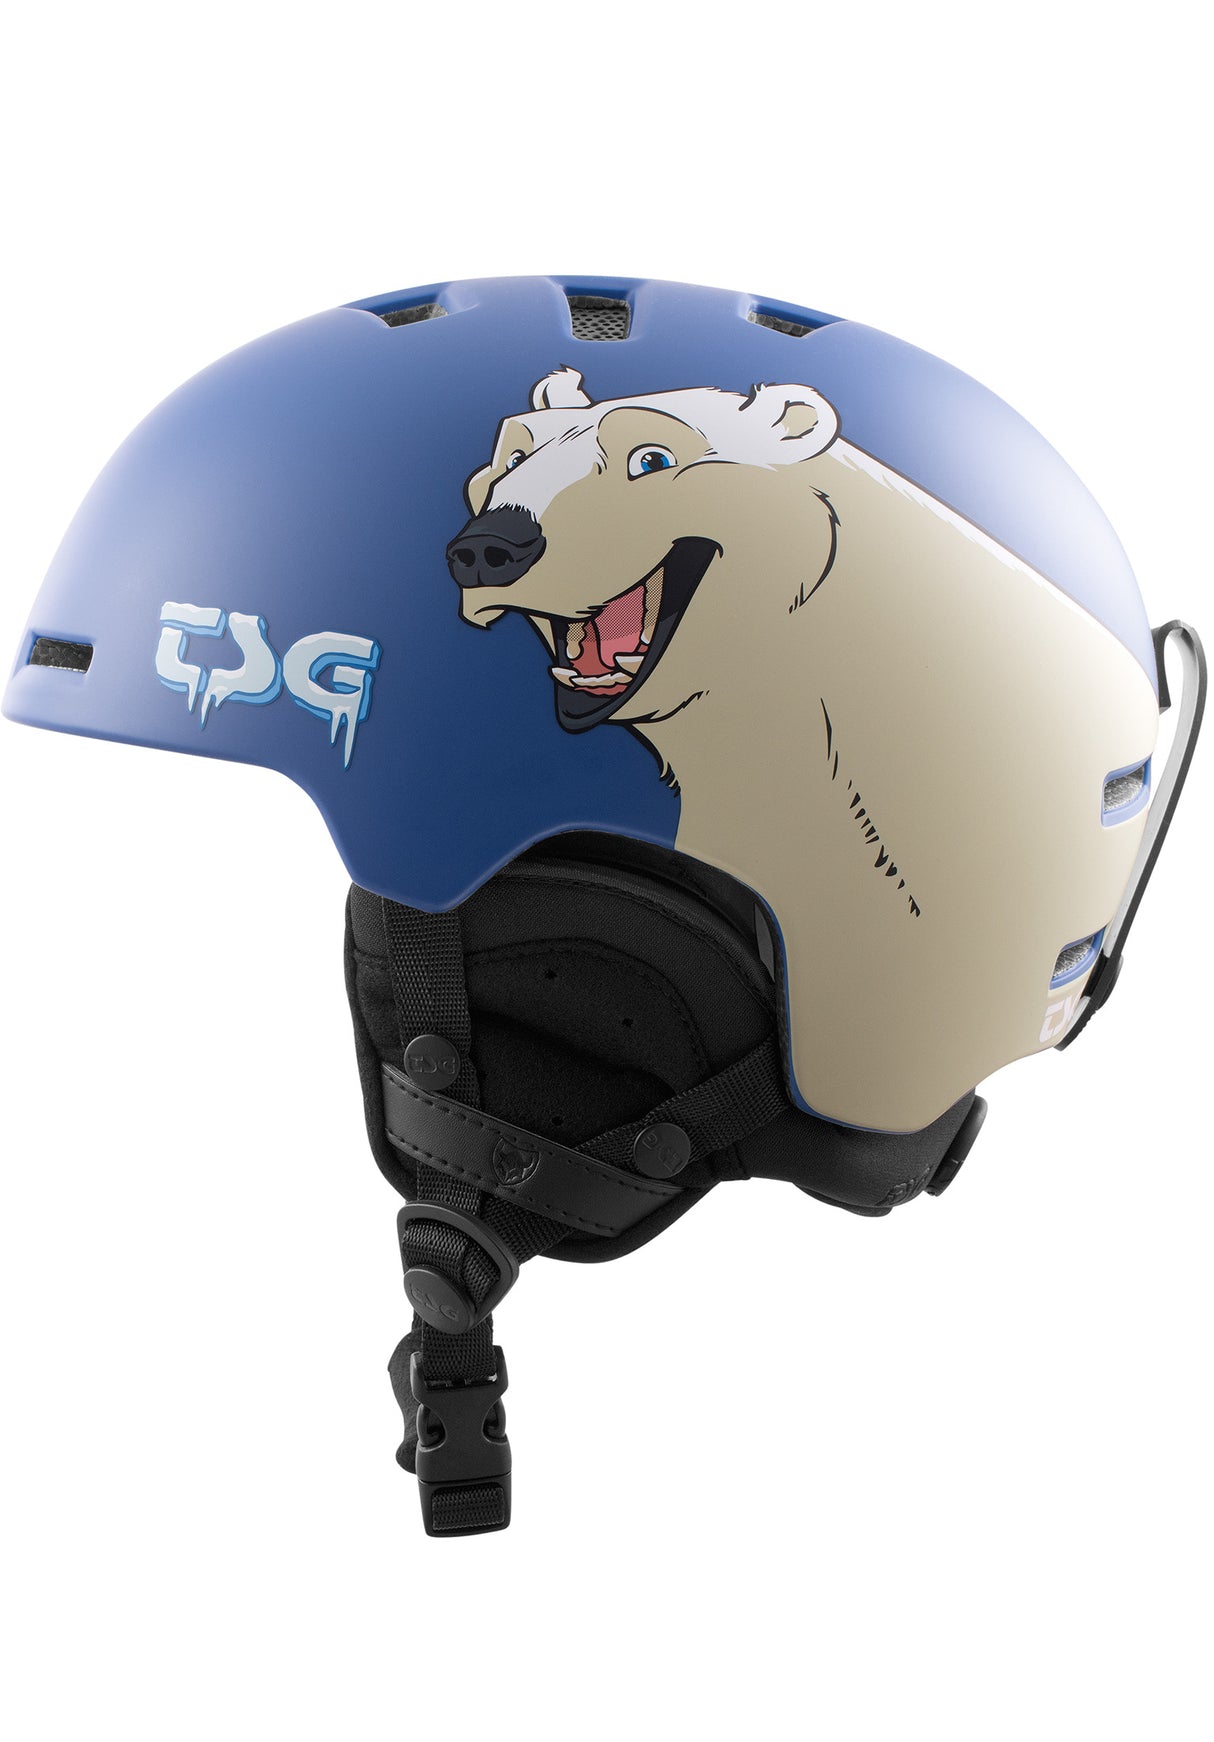 TSG Arctic Nipper Maxi Solid Color Casco de Esqui o Snowboard para niño  2021